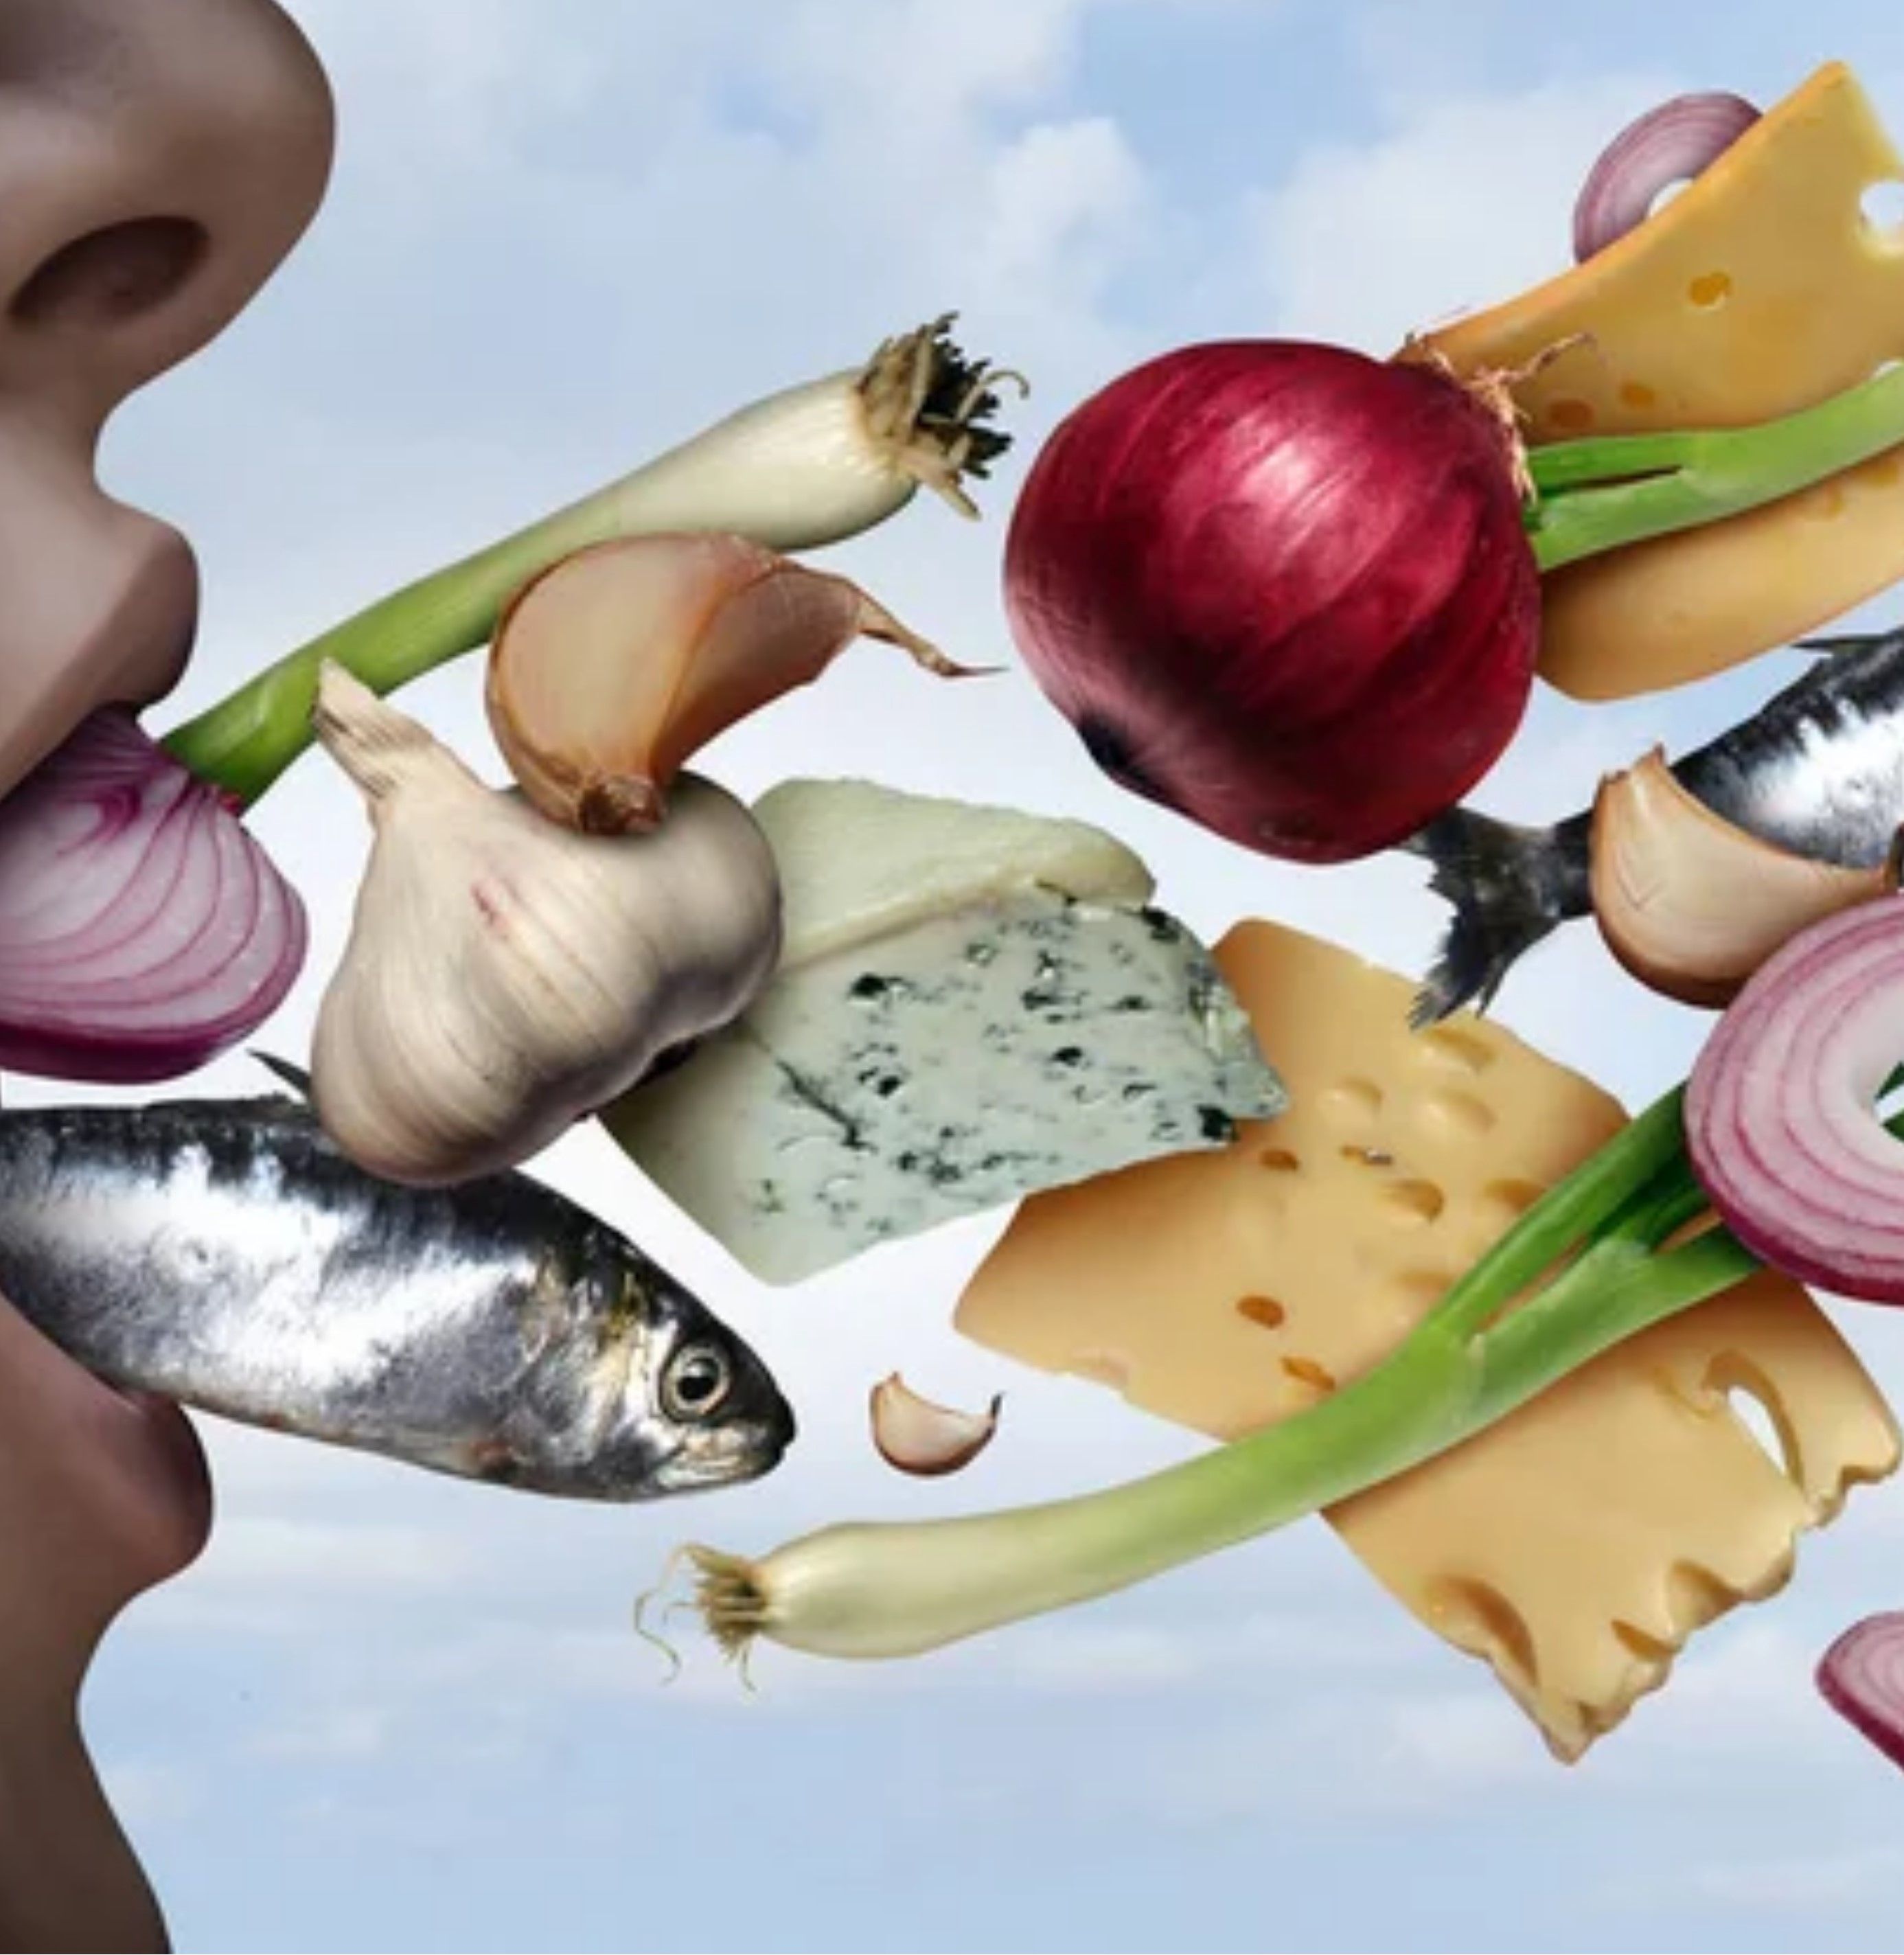 Des aliments (oignons, fromage et poisson) qui sortent de la bouche d'une personne